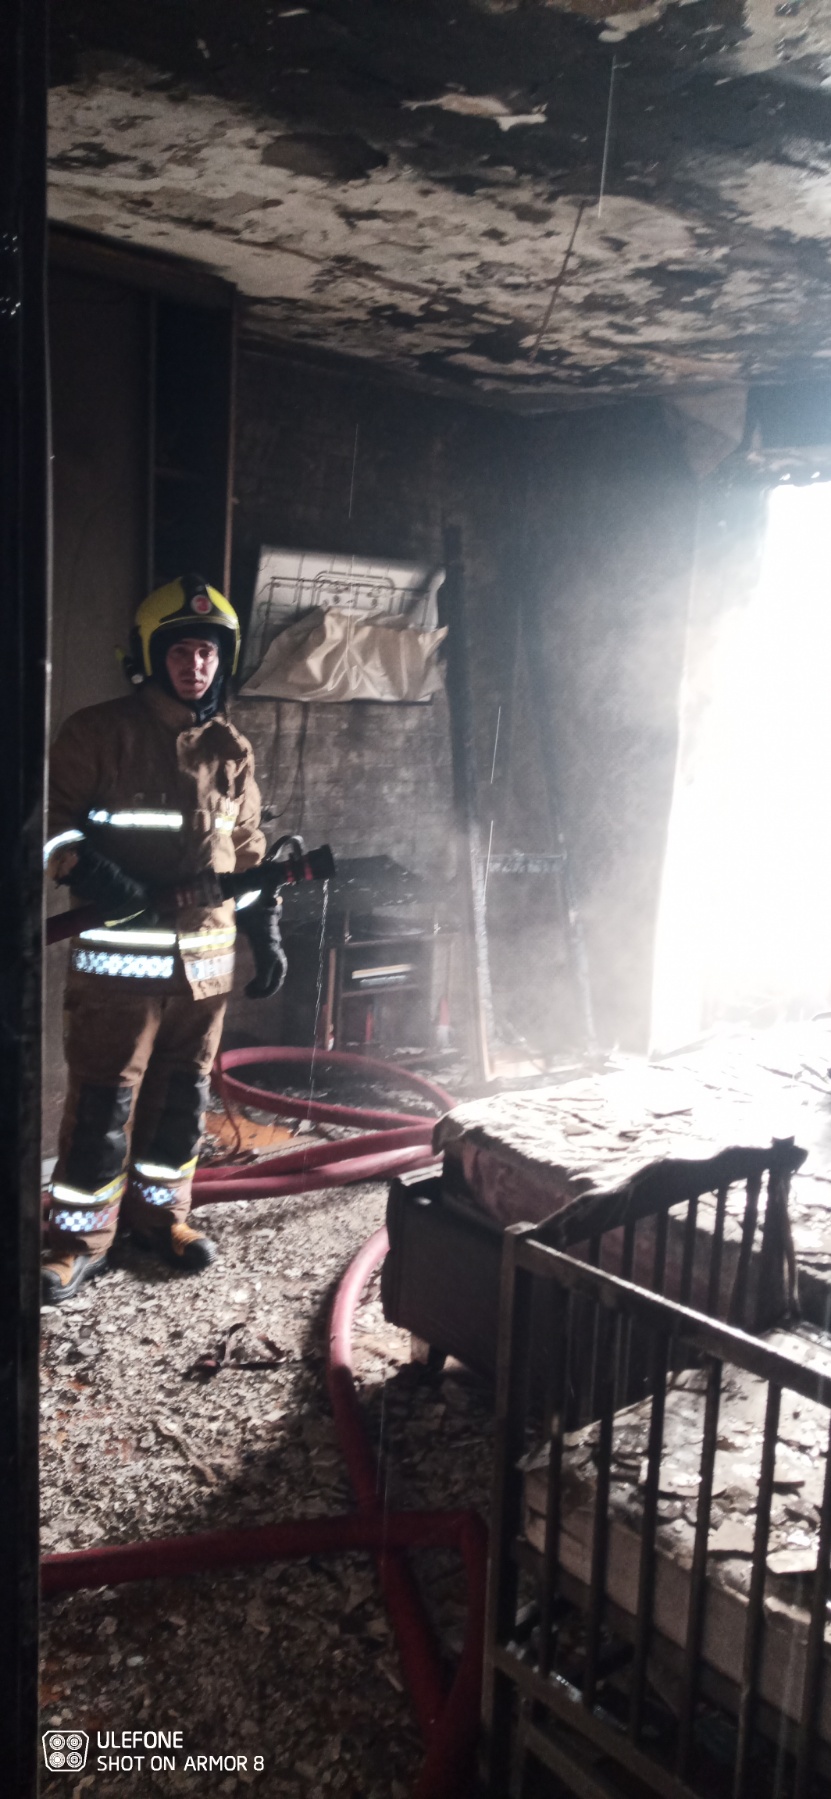 (ФОТО) В Кишиневе произошел пожар в жилом доме. На место прибыли 5 пожарных машин